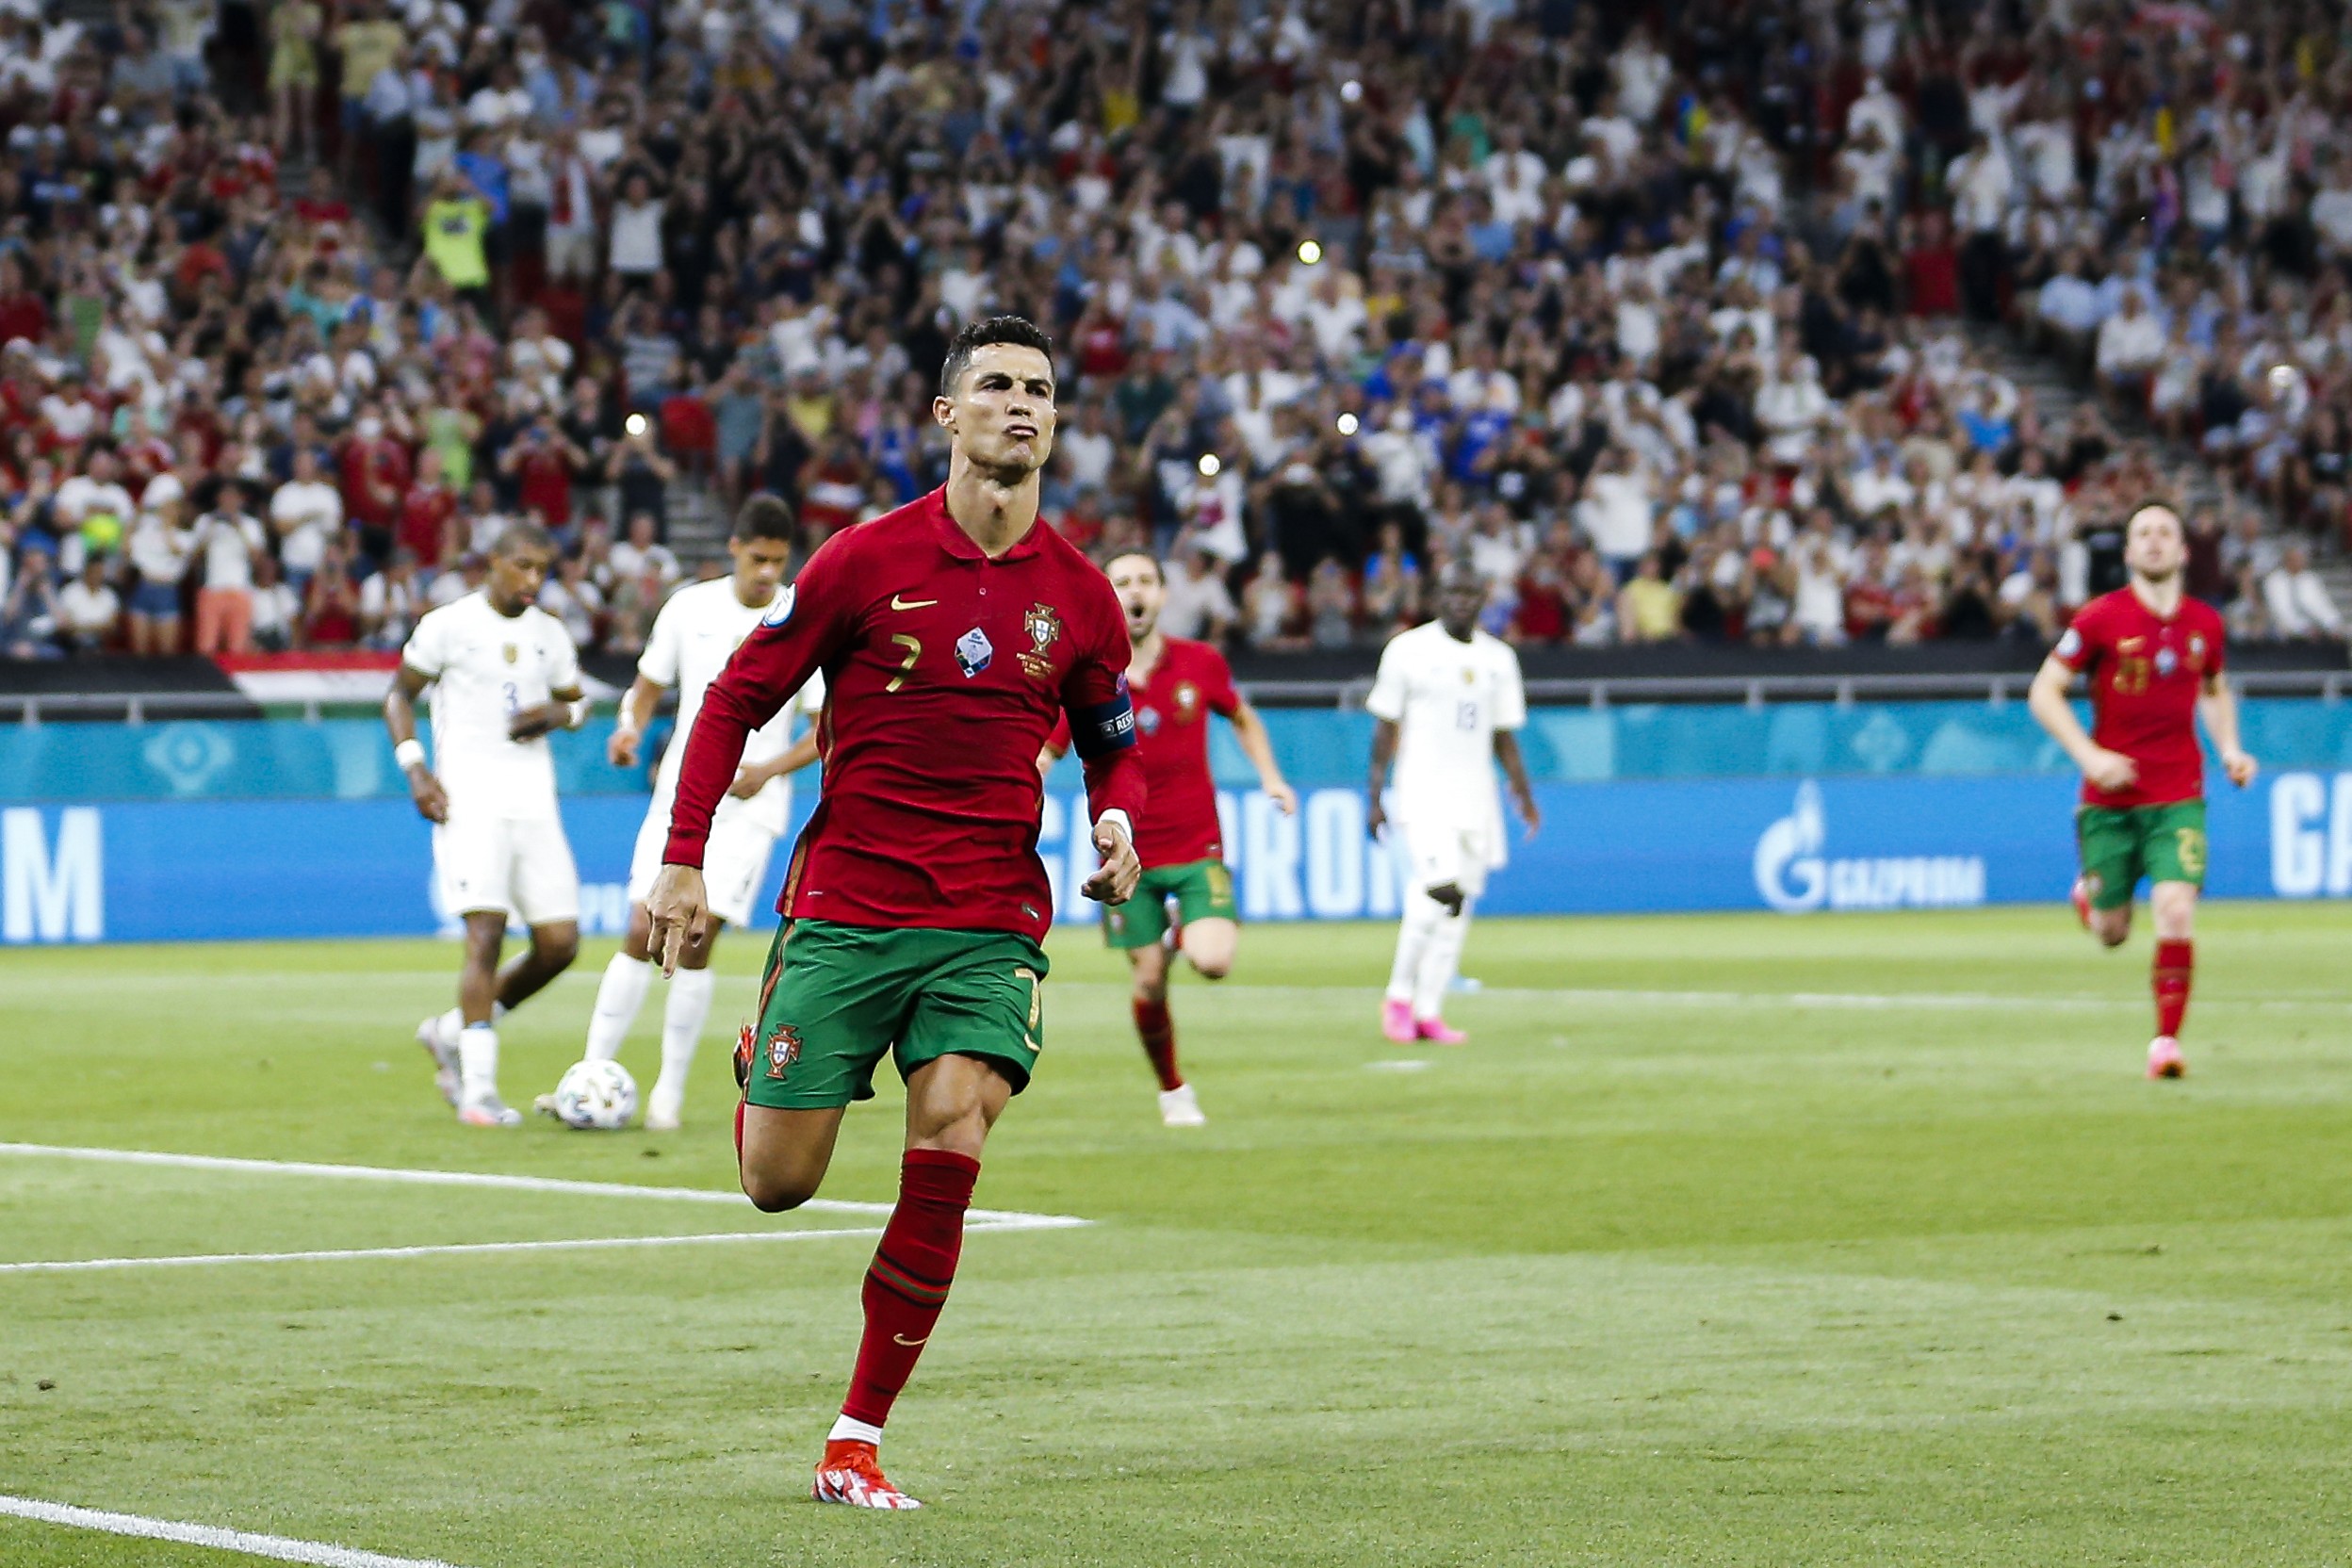 c罗成为历史最佳射手葡萄牙国家队送祝贺